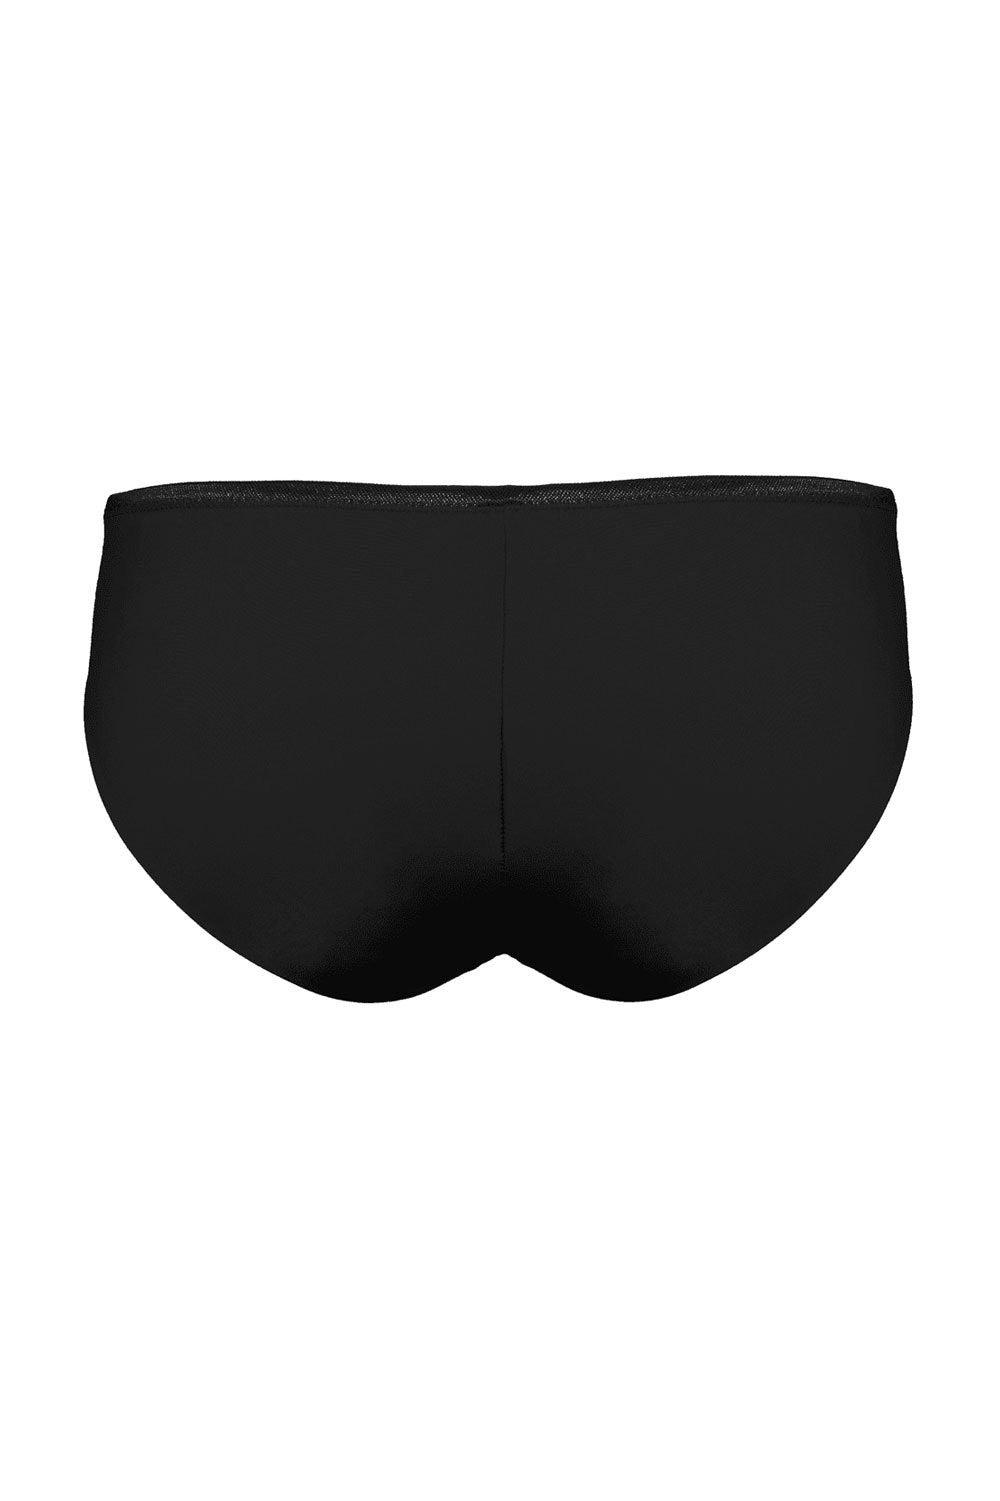 Monica black slip panties - Slip panties by Love Jilty. Shop on yesUndress